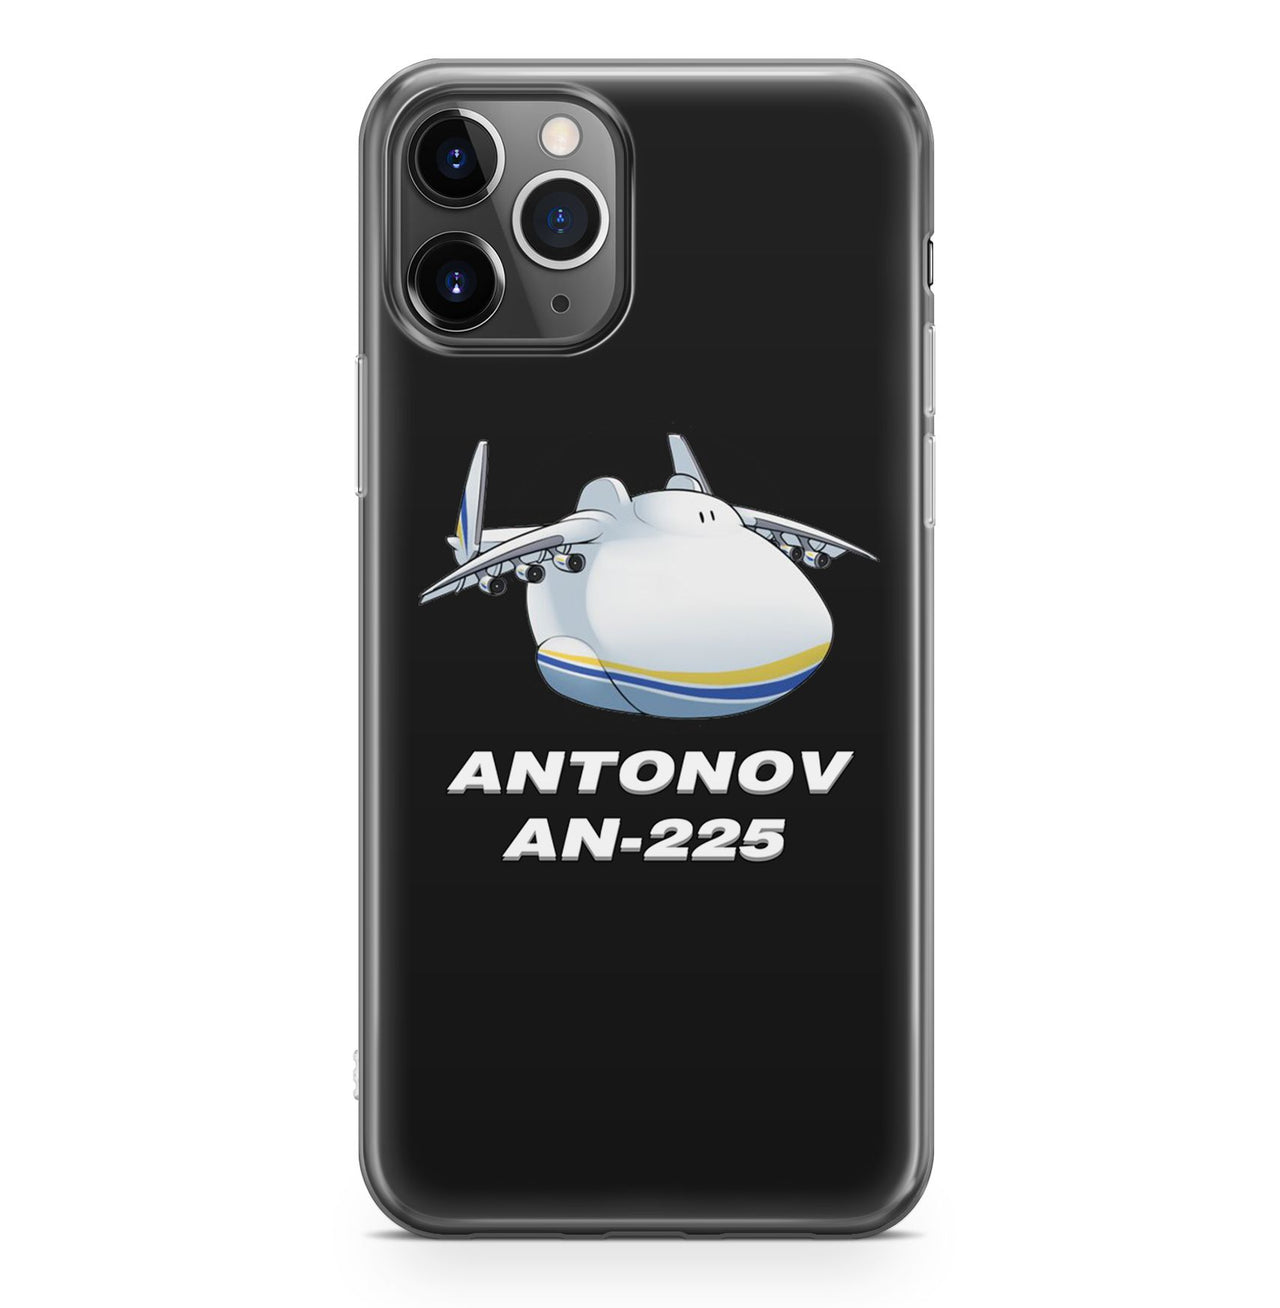 Antonov AN-225 (21) Designed iPhone Cases